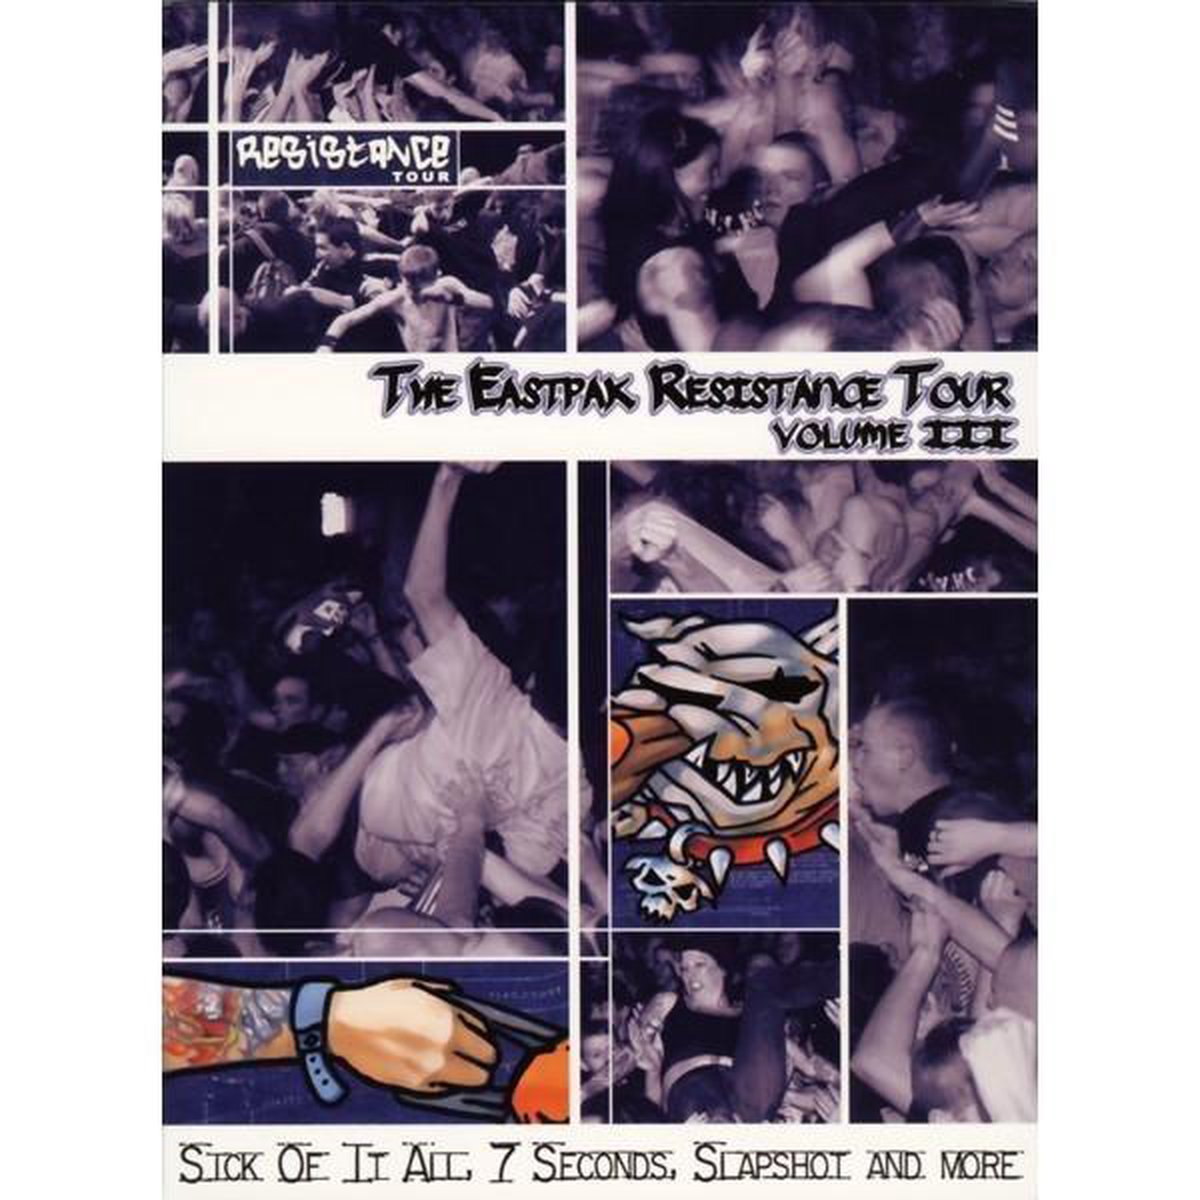 voorkomen met de klok mee effectief Eastpak Resistance Tour Vol. 3, various artists | Muziek | bol.com